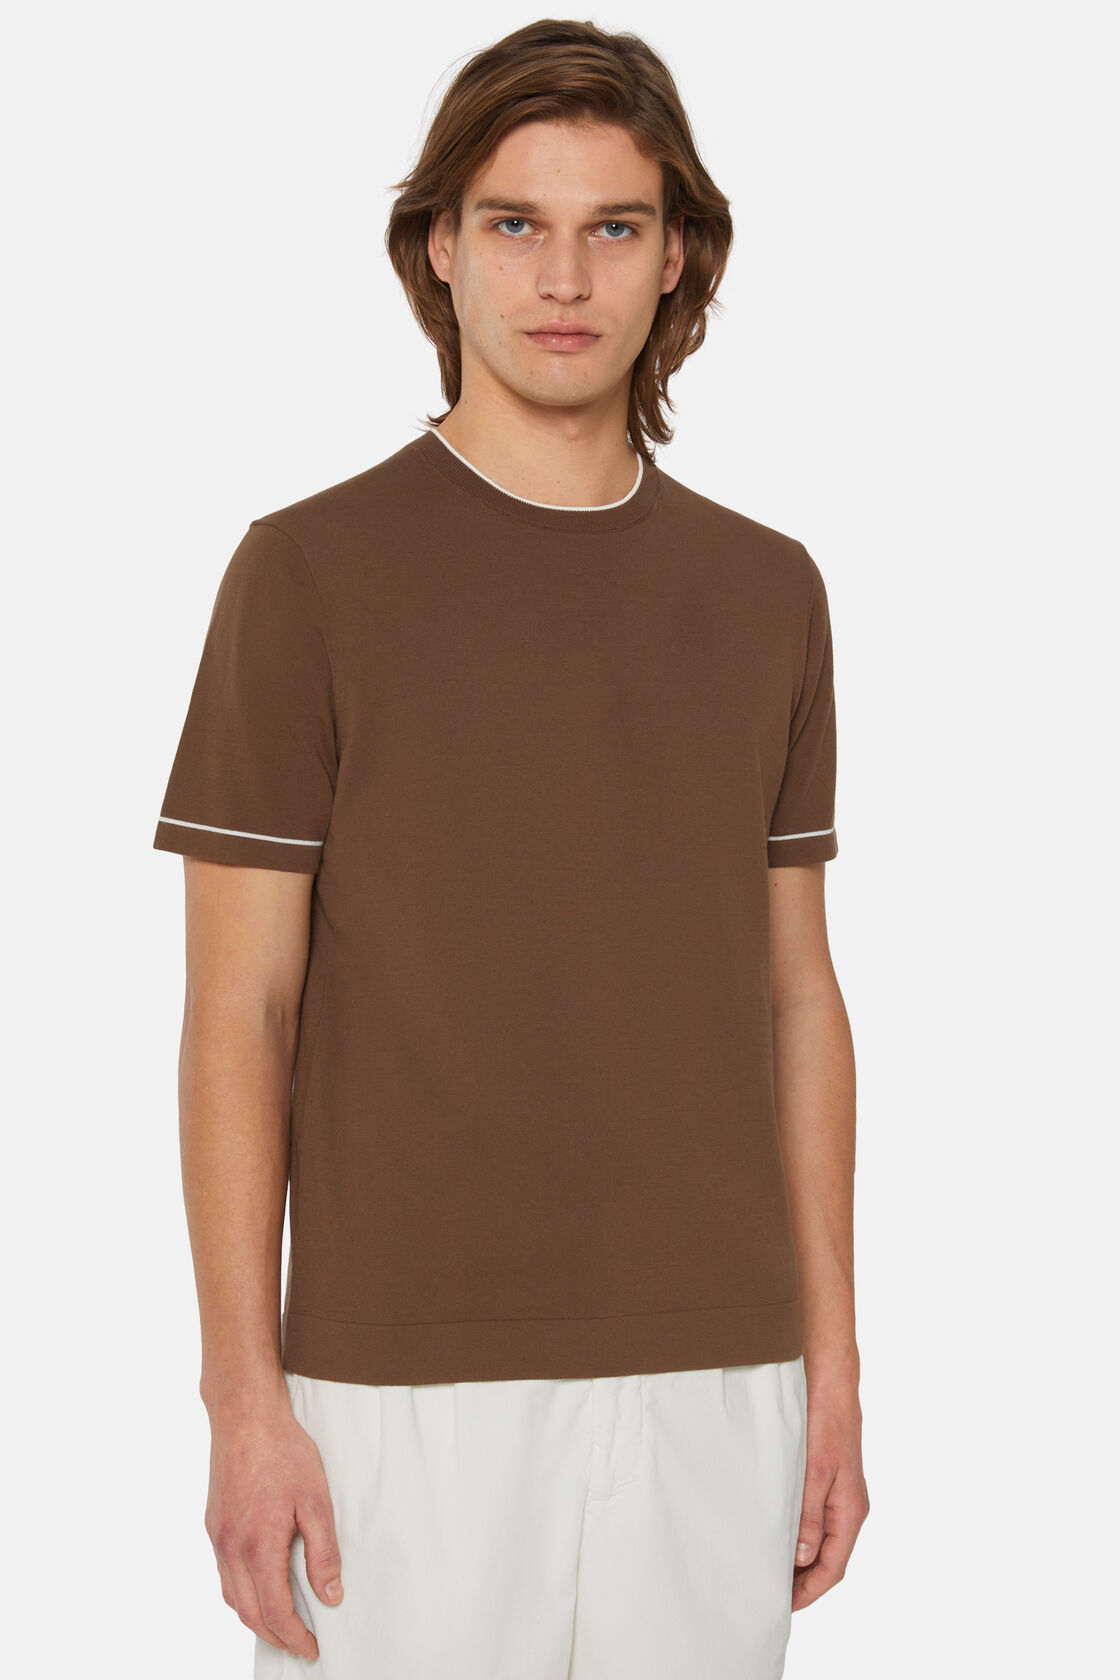 Καφέ πλεκτό μπλουζάκι από βαμβακερό κρεπ, Brown, hi-res